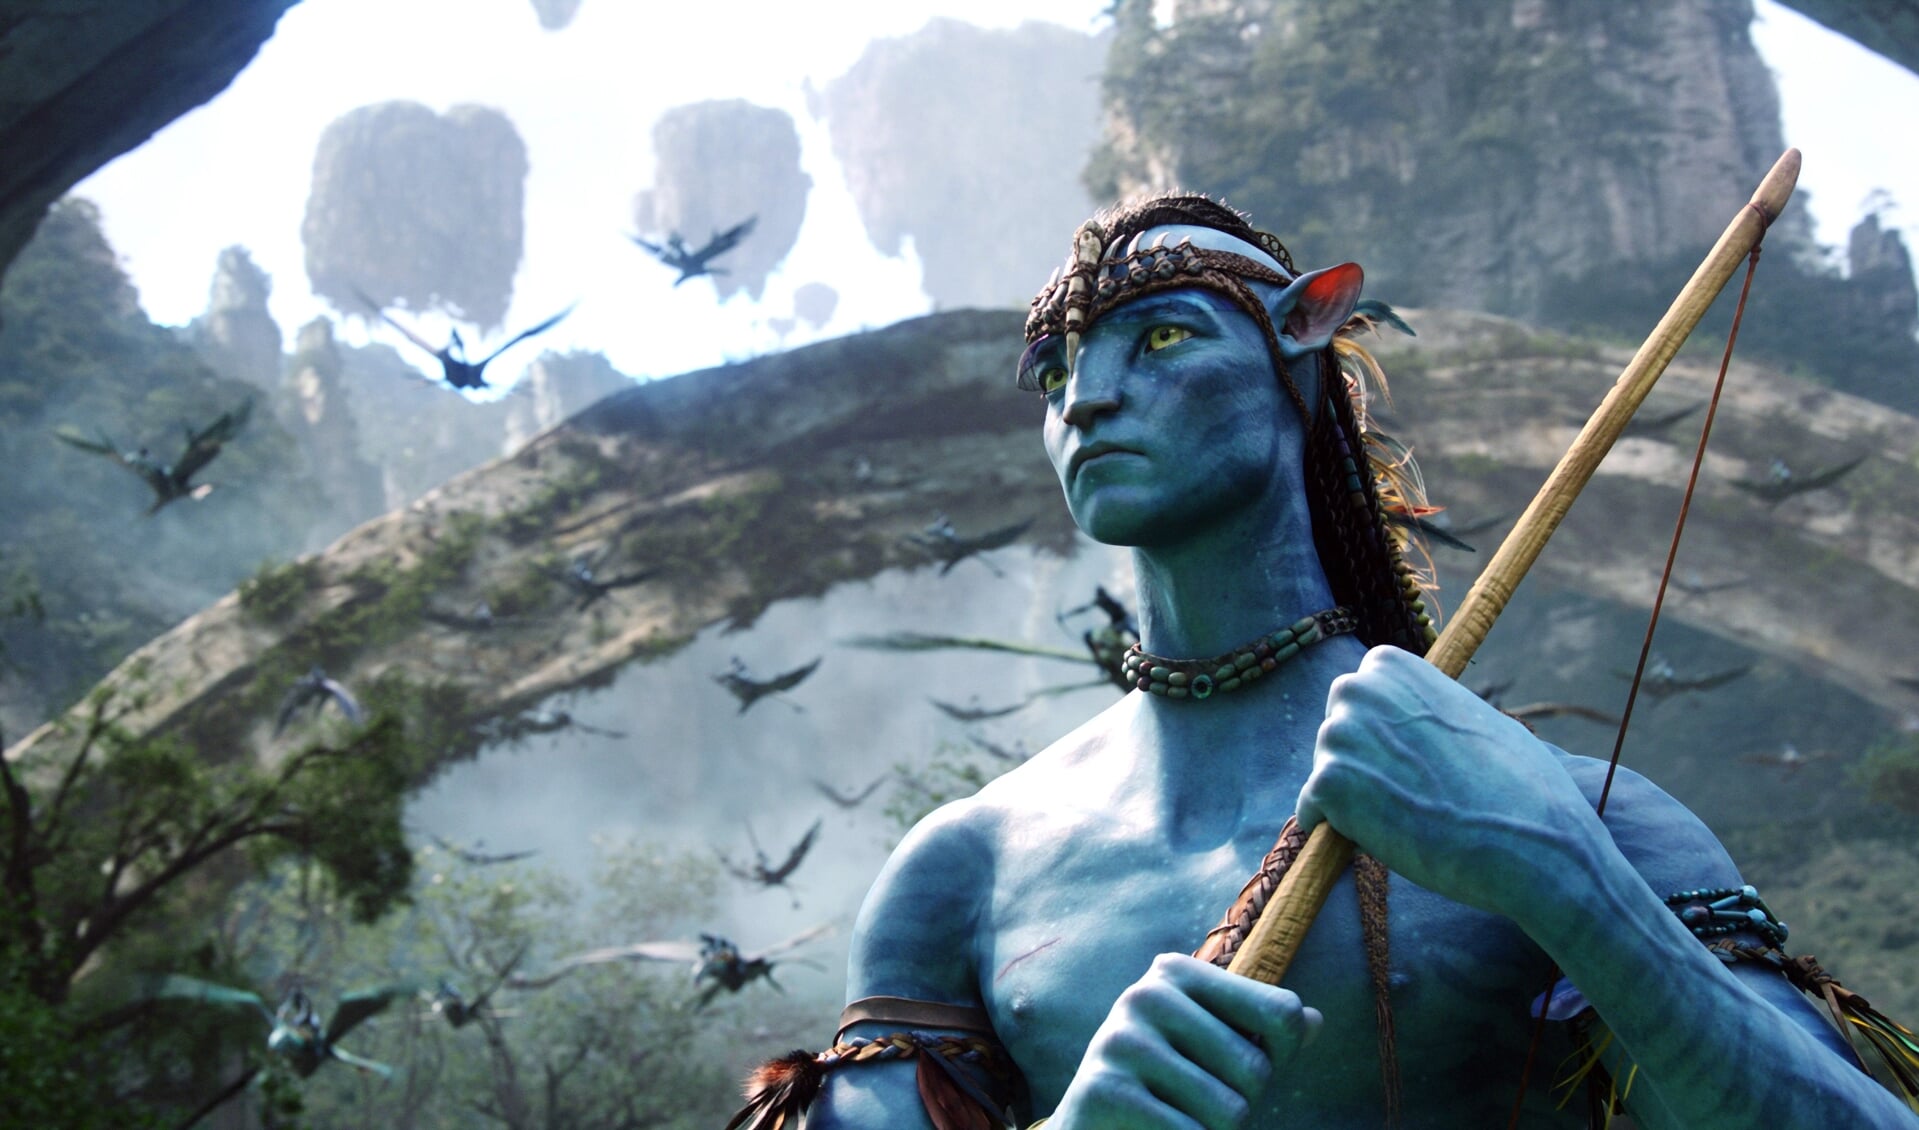 Still uit de beroemde film 'Avatar' waarmee regisseur James Cameron de weg baande voor nog meer visueel spektakel.